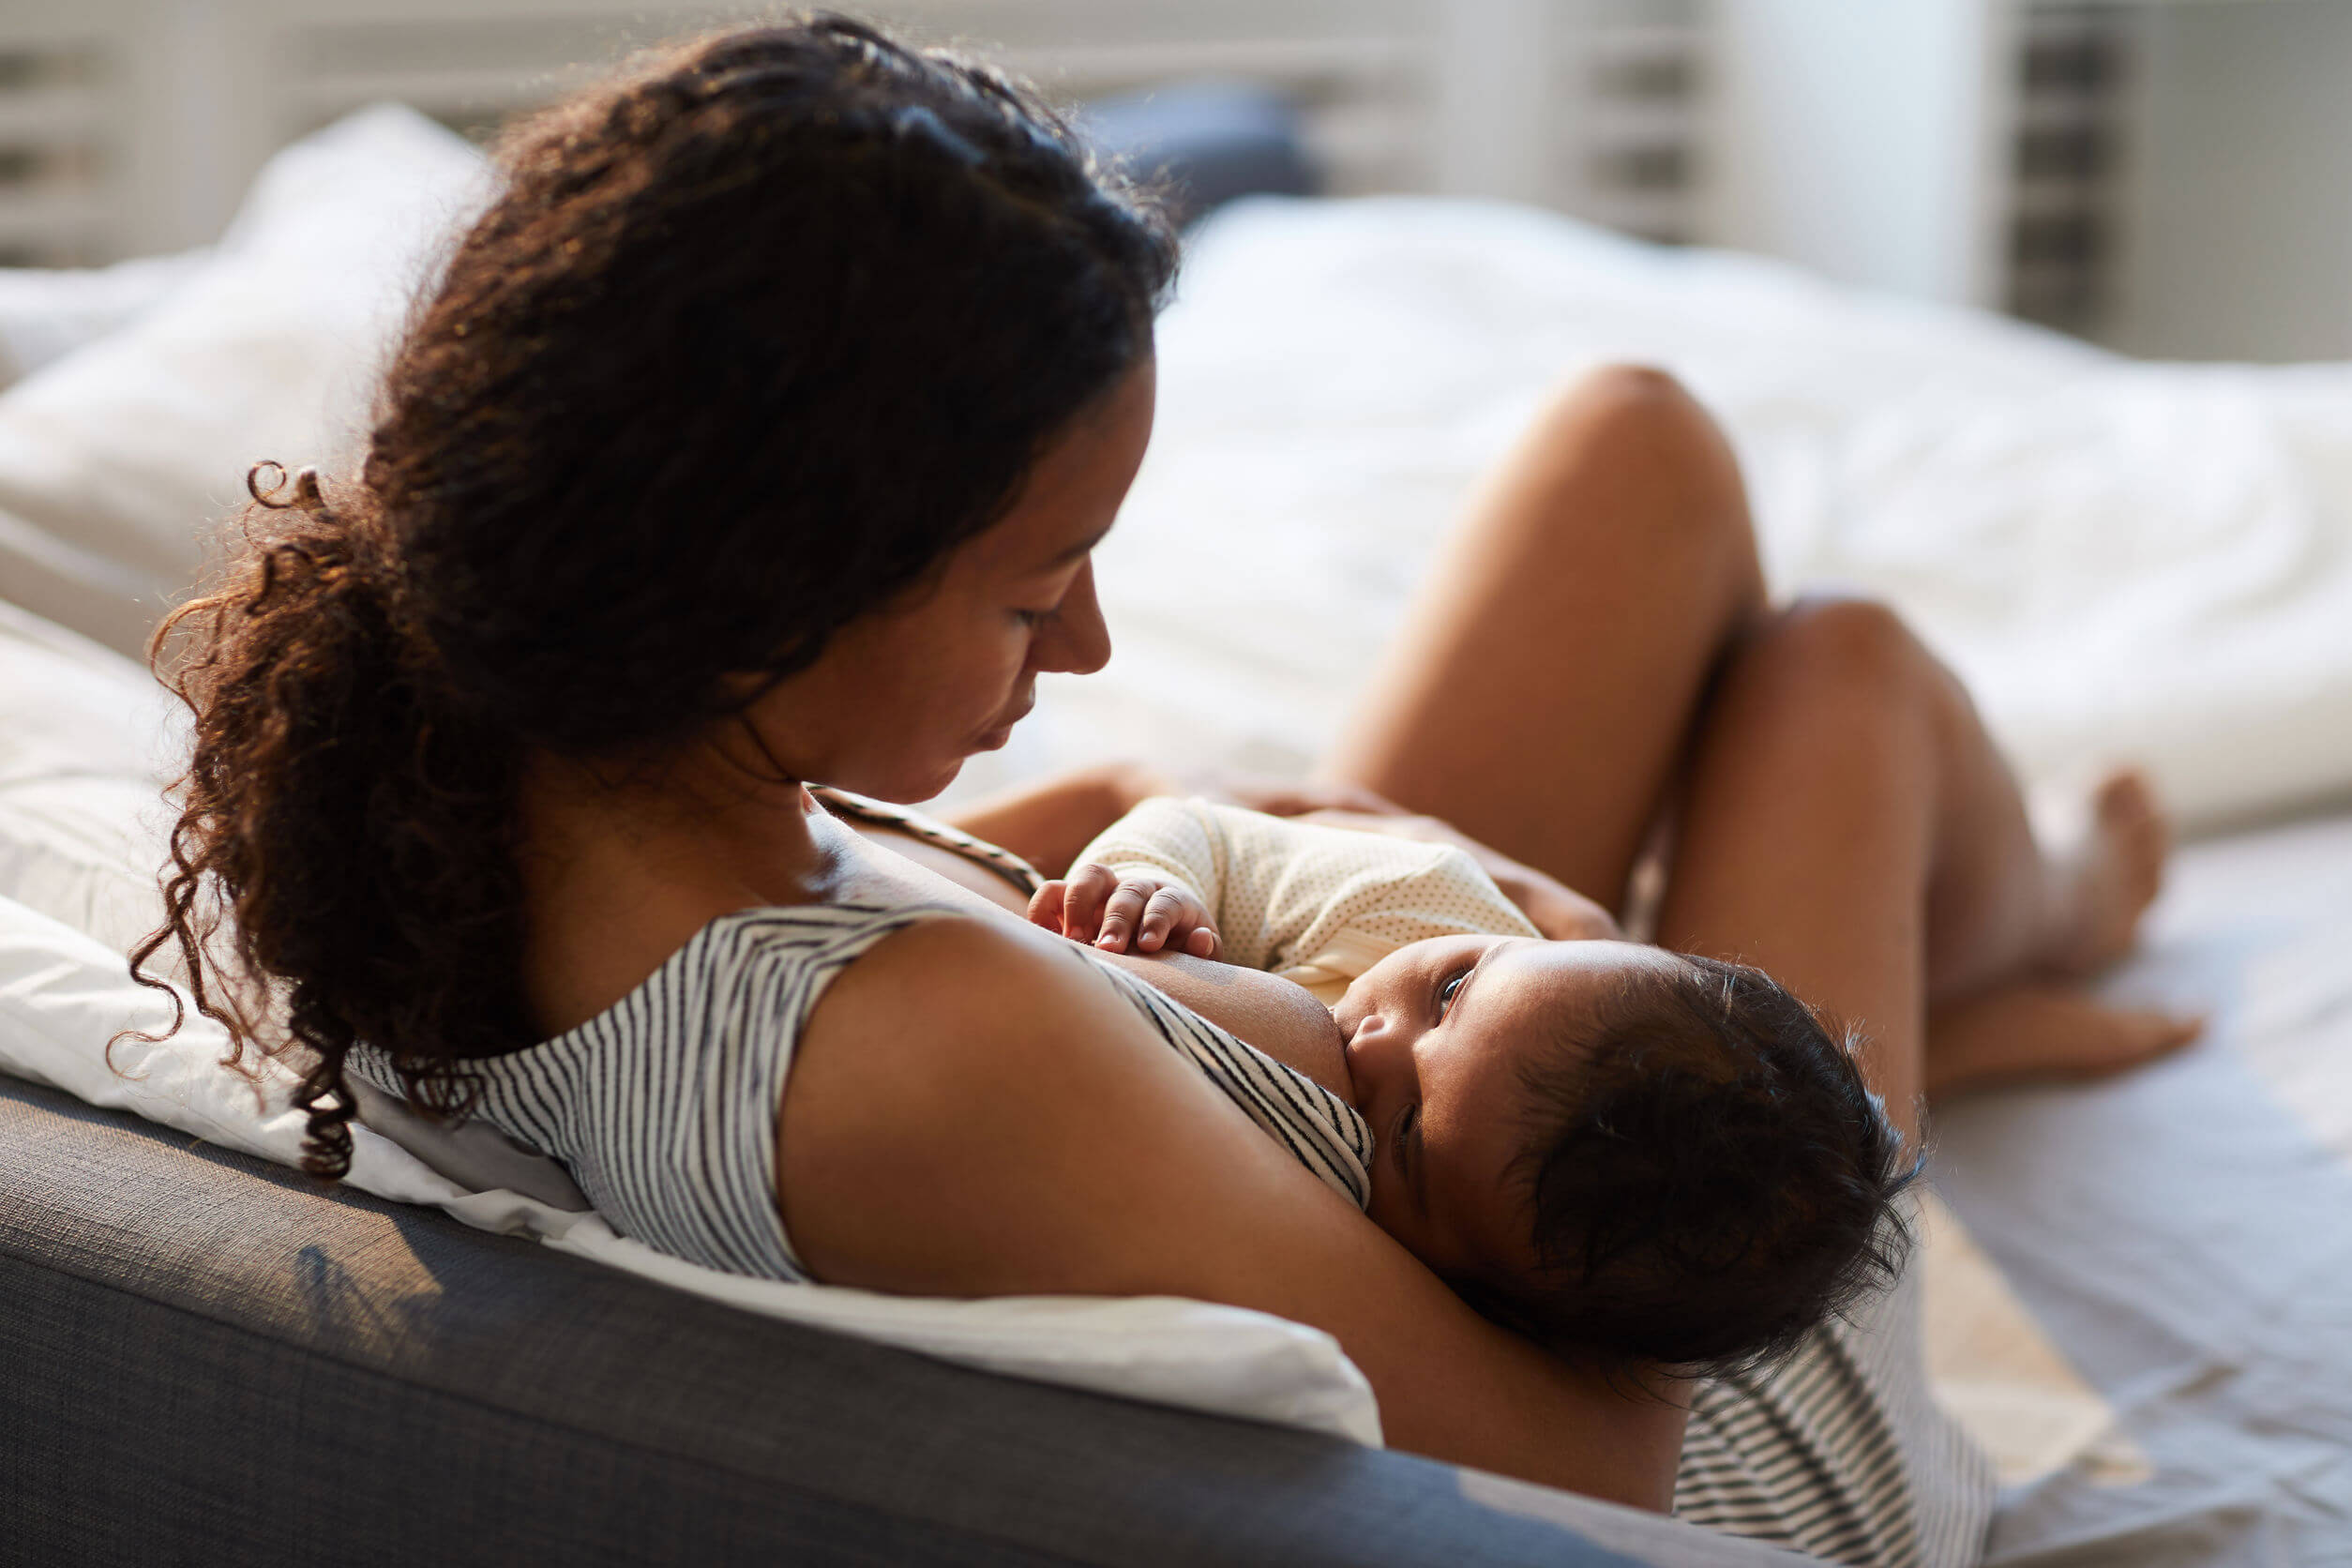 En la semana 32 del embarazo es conveniente aprender los principios de la lactancia.